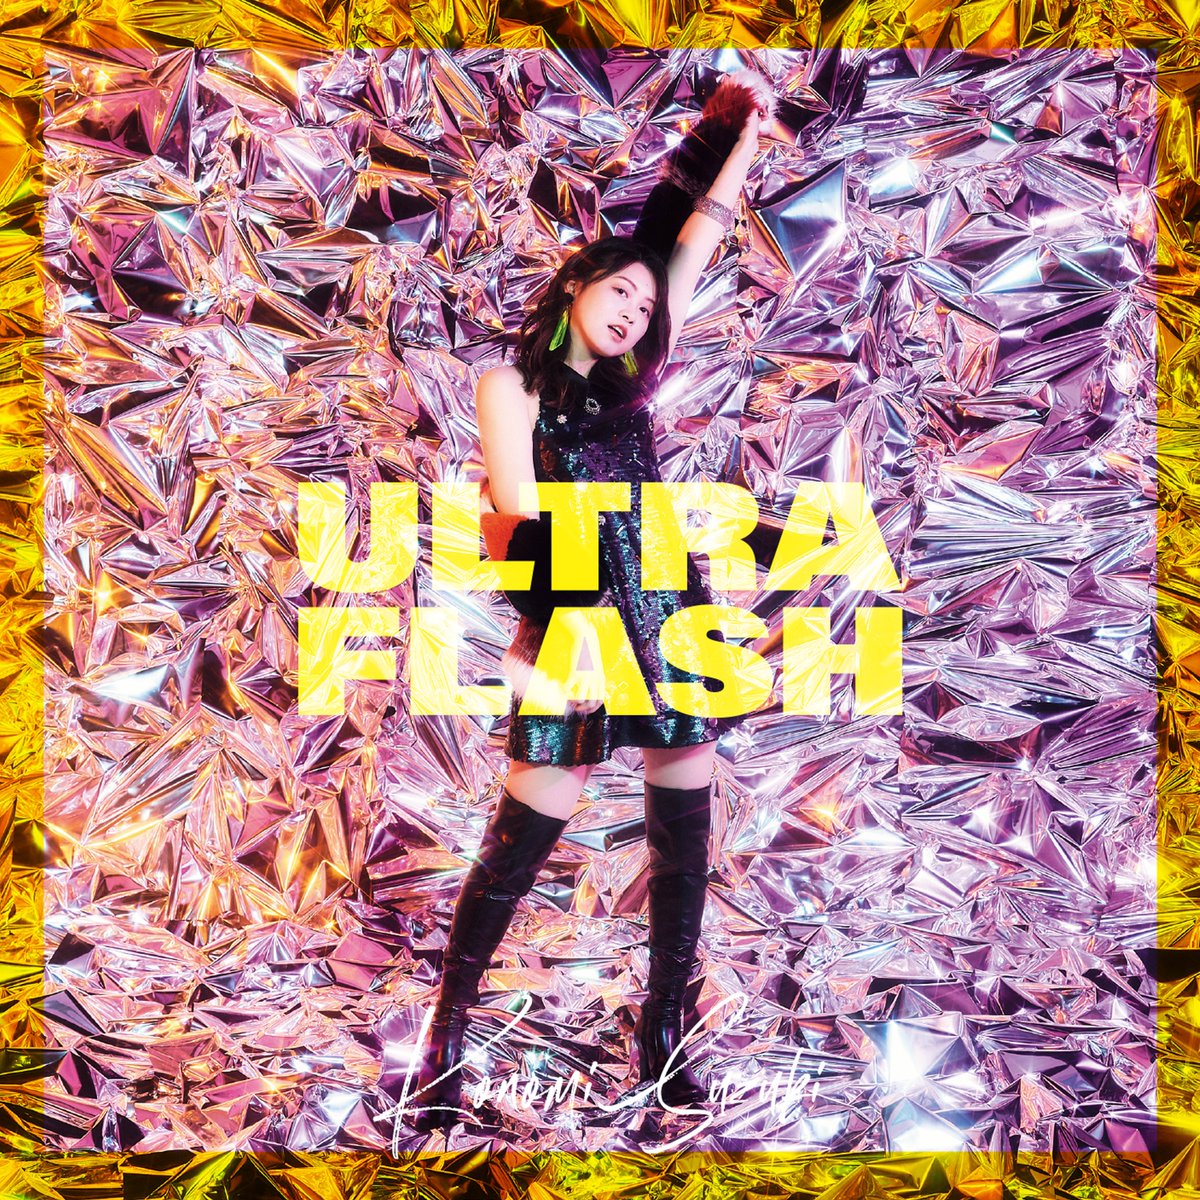 Cover for『Konomi Suzuki - HELLO』from the release『ULTRA FLASH』